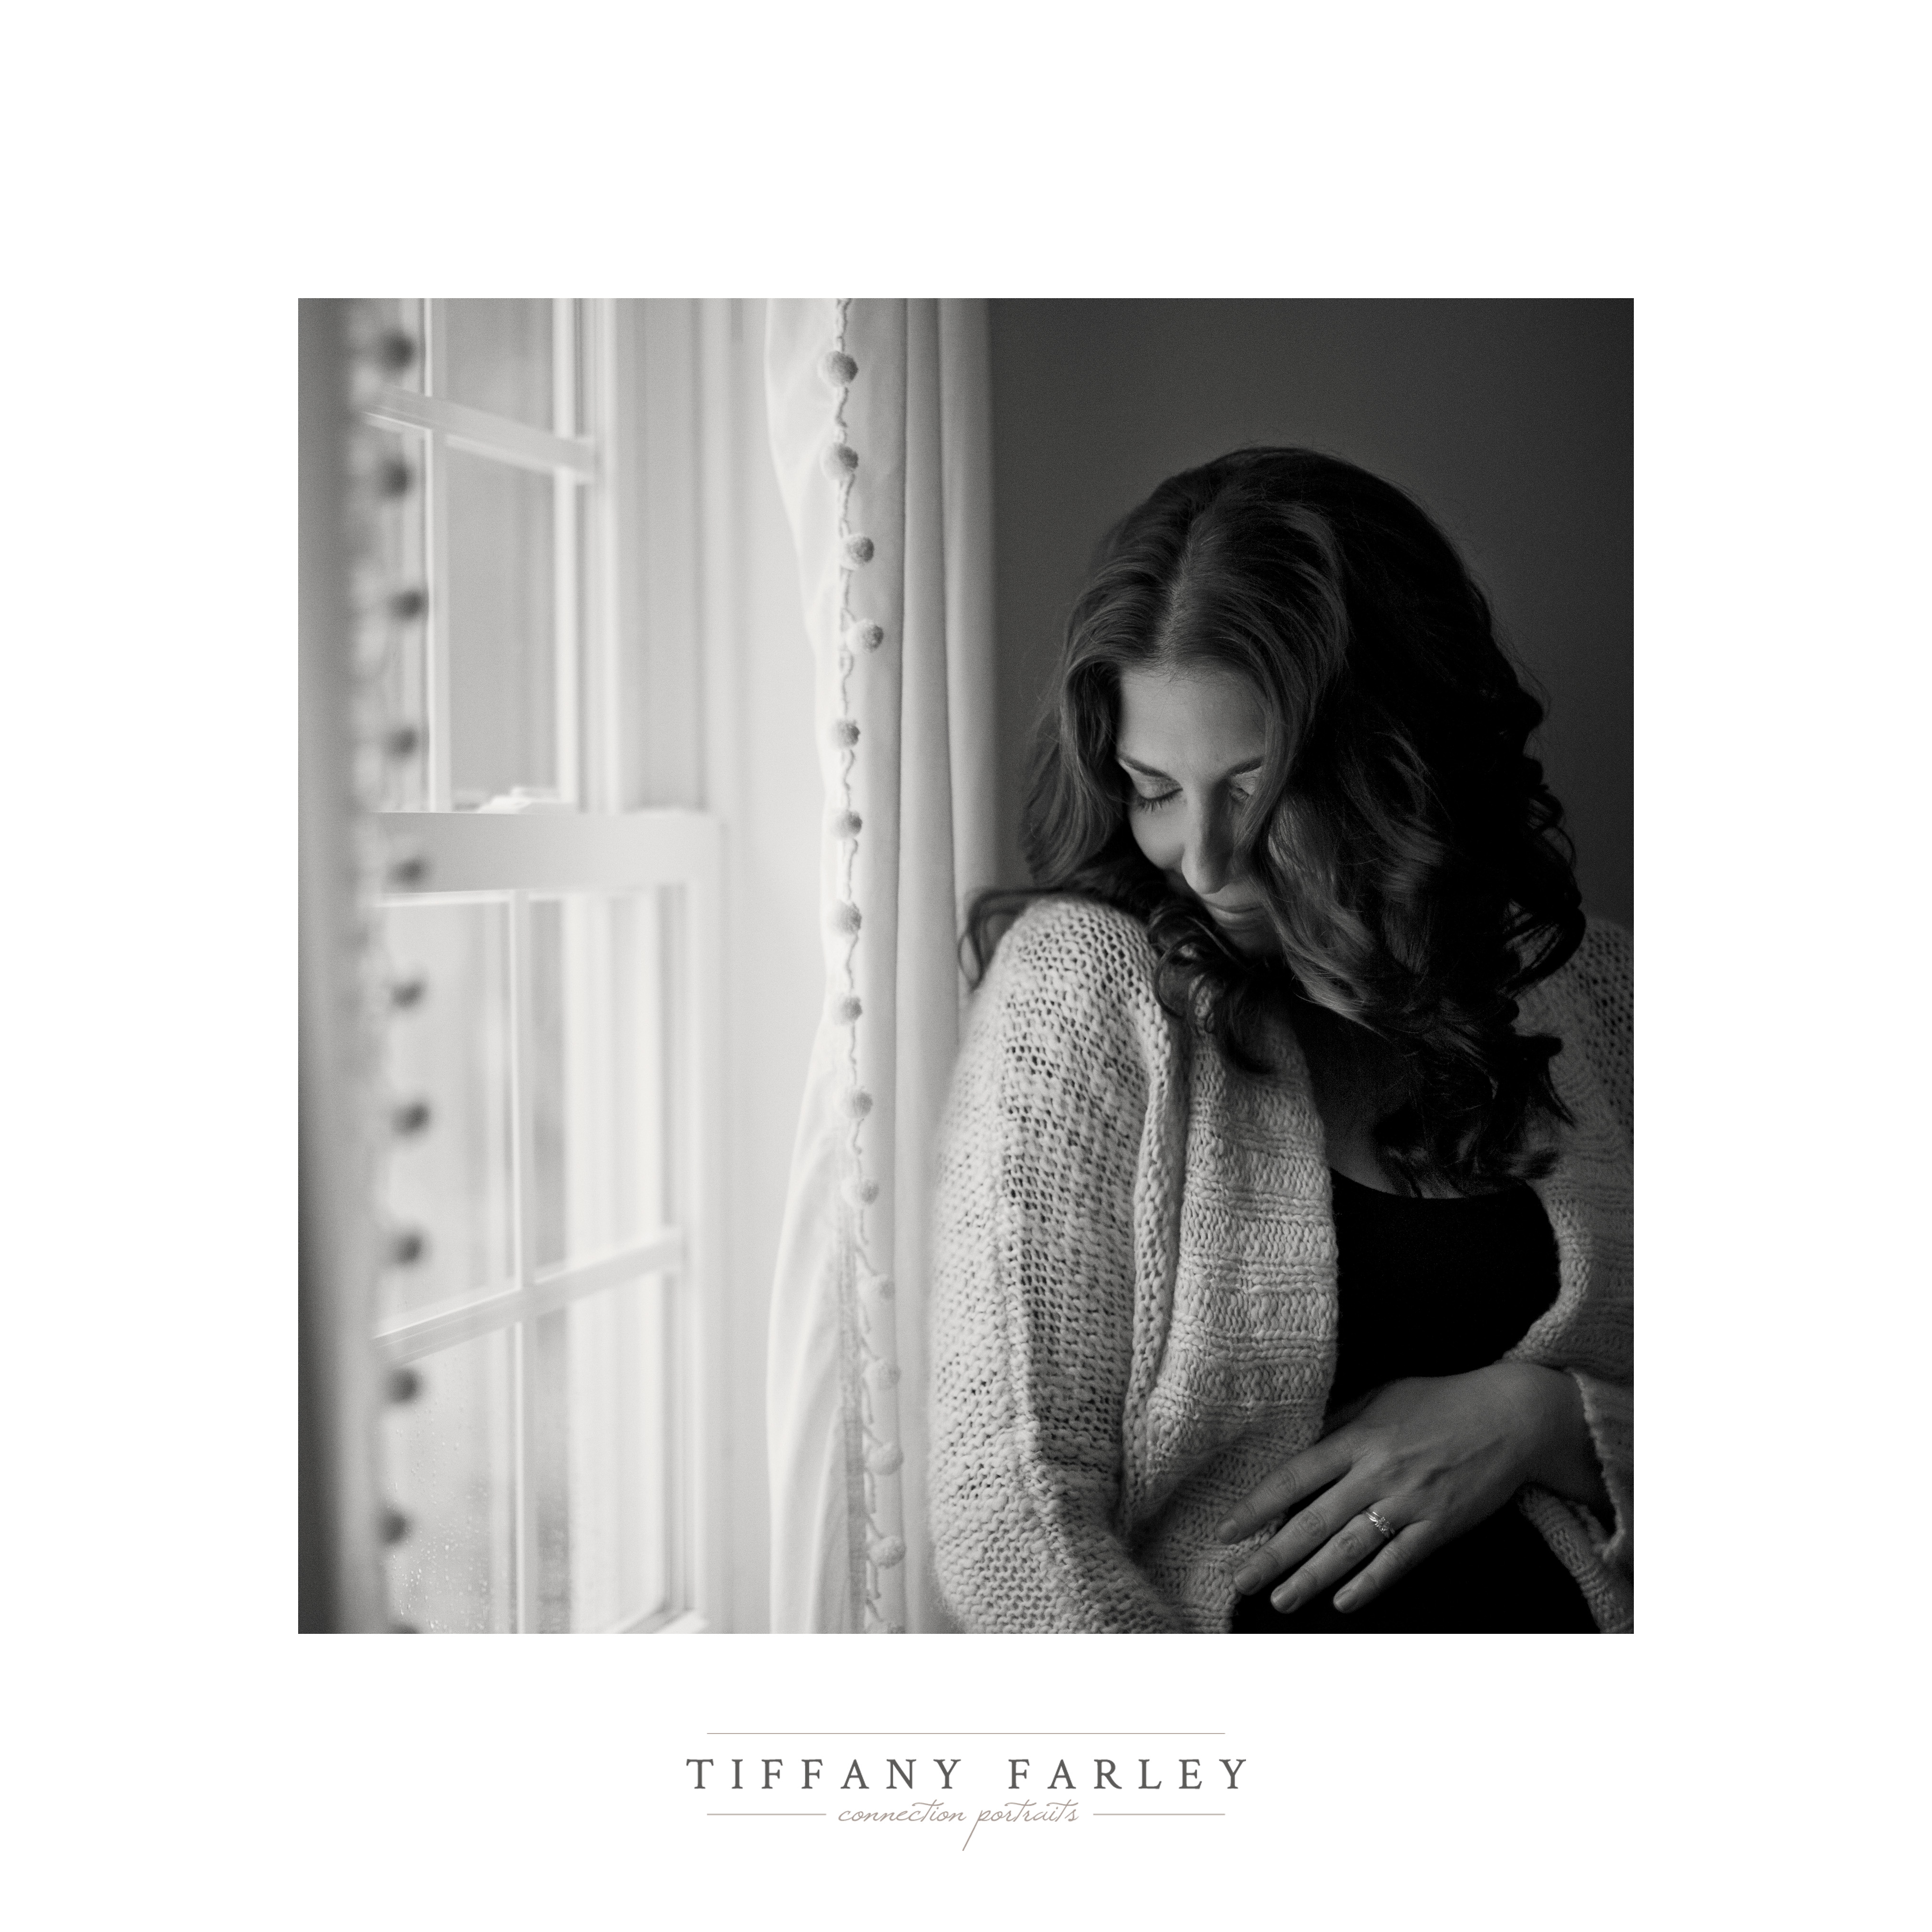 Portland Maine Maternity Photography, Tiffany Farley, http://tiffanyfarley.com